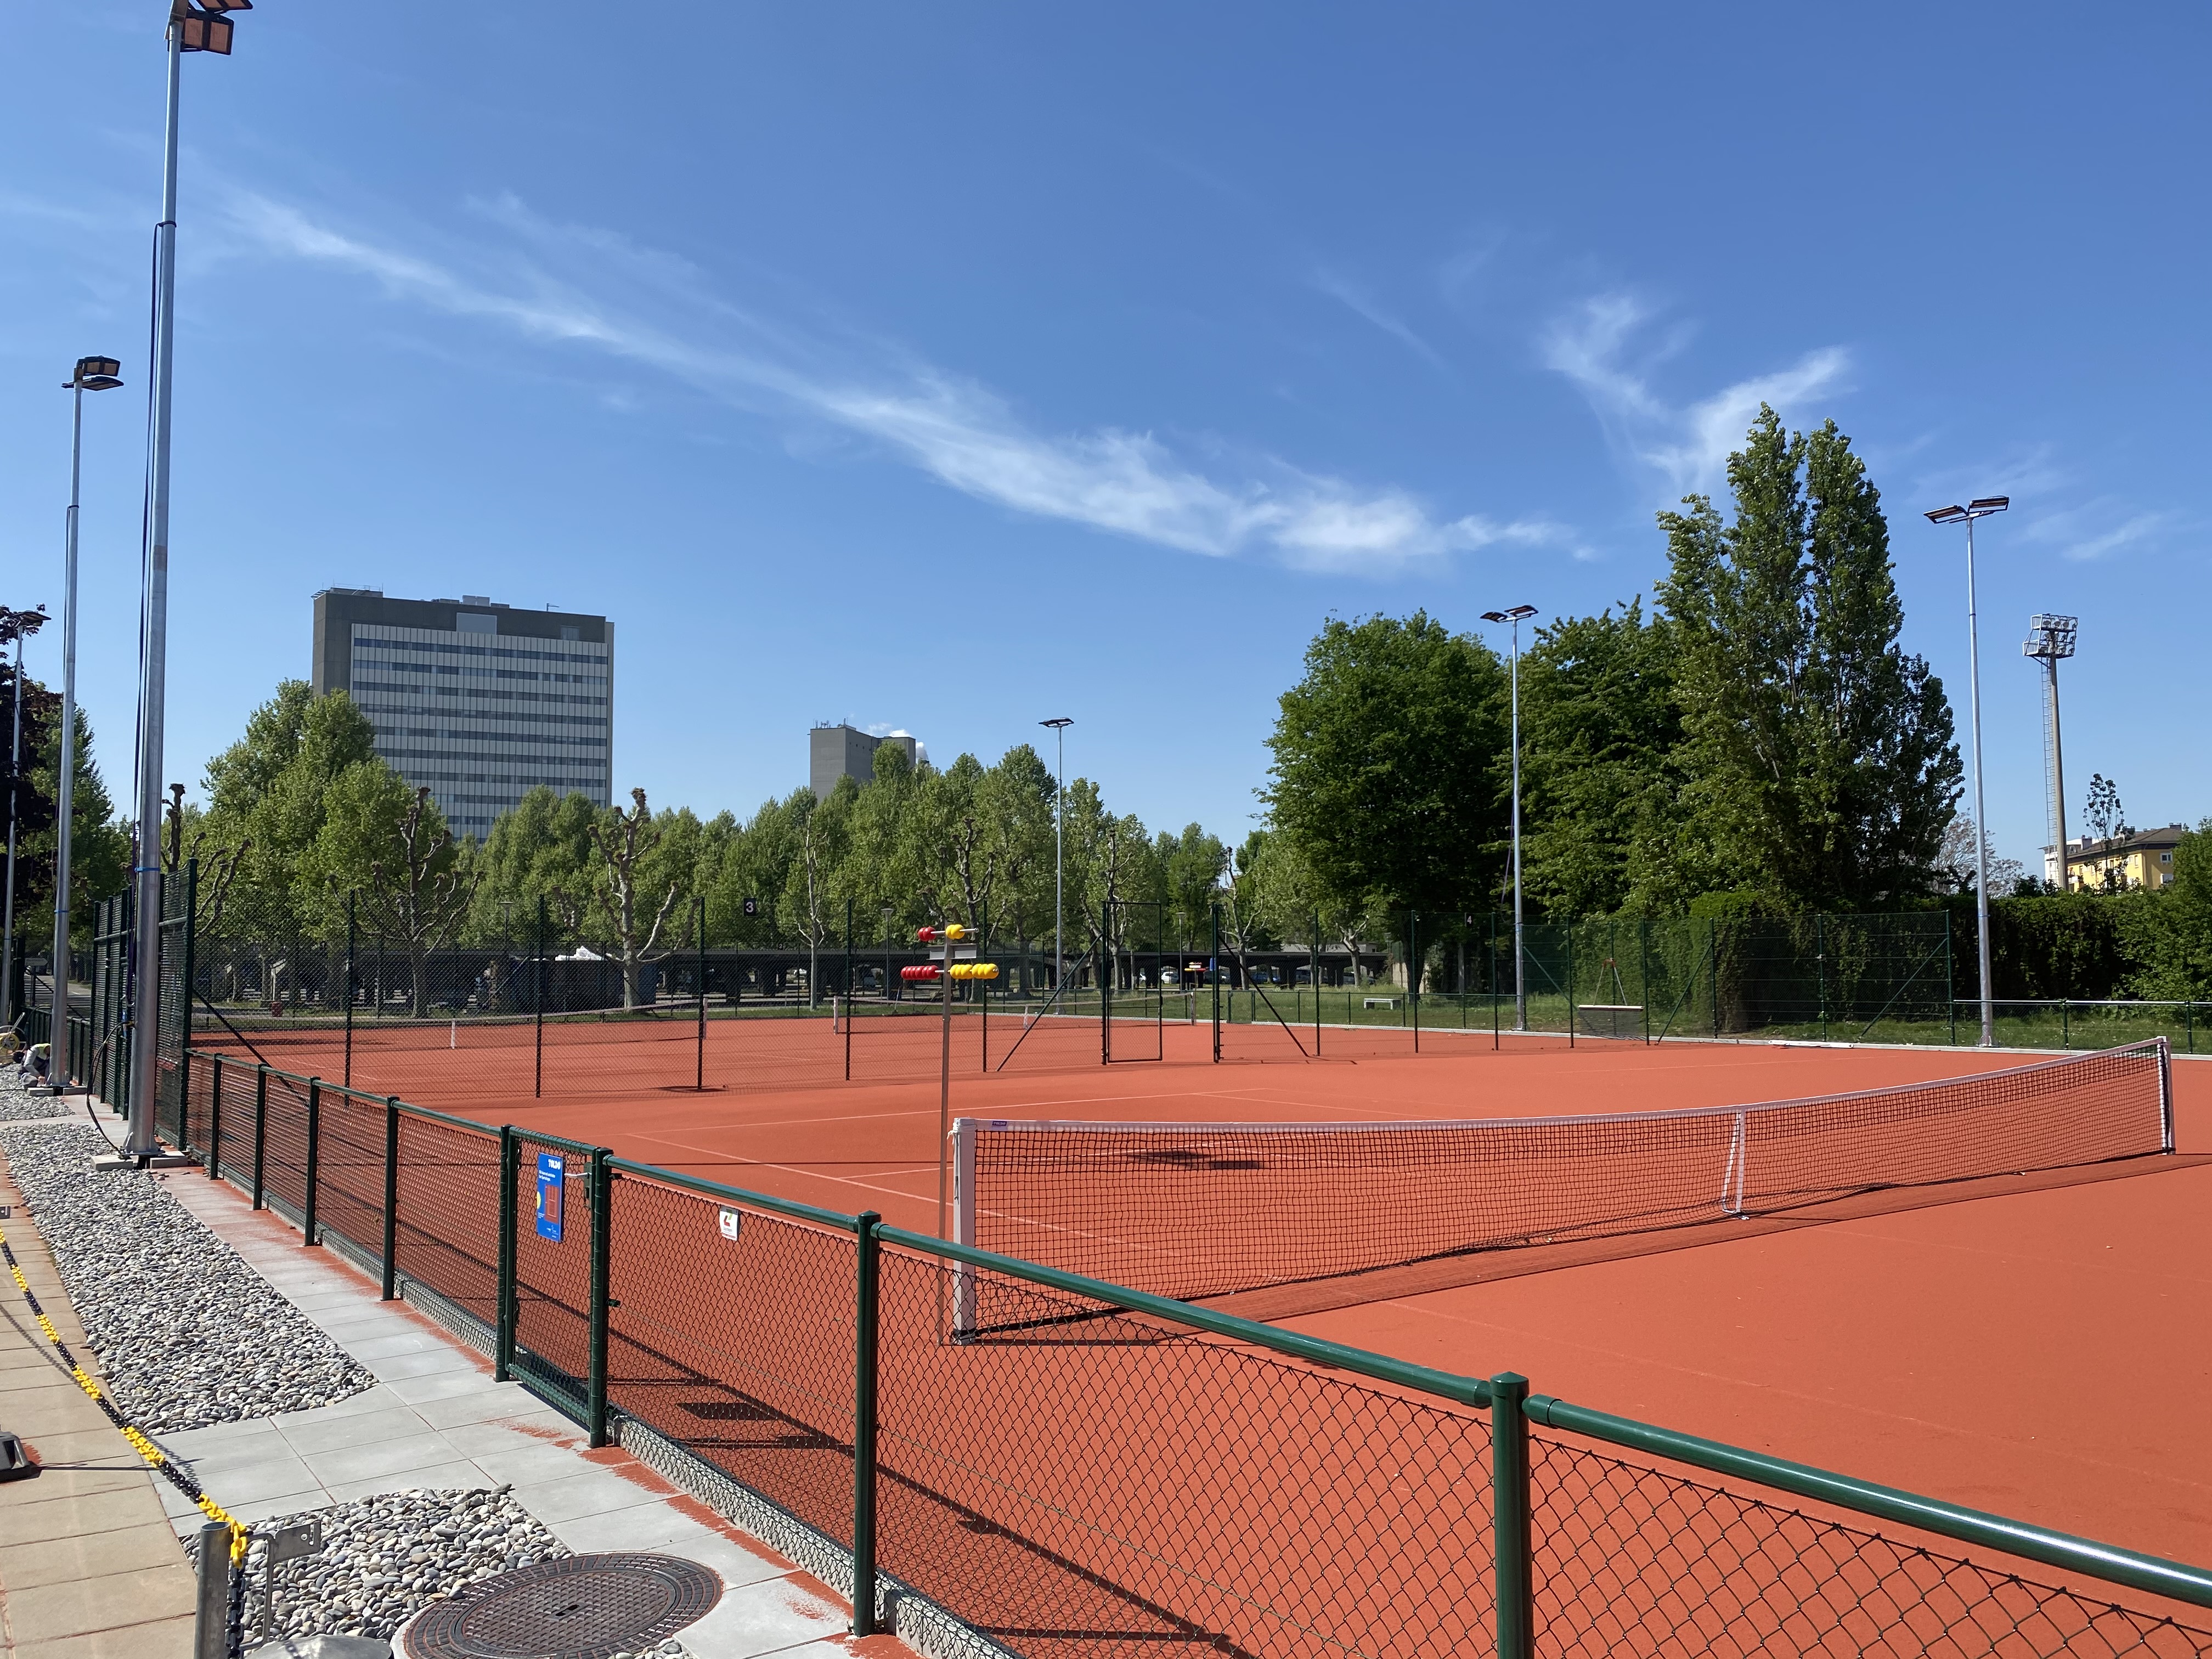 Bild des Tennisaussenplatzes des TC Novartis mit Novartis-Gebäude im Hintergrund